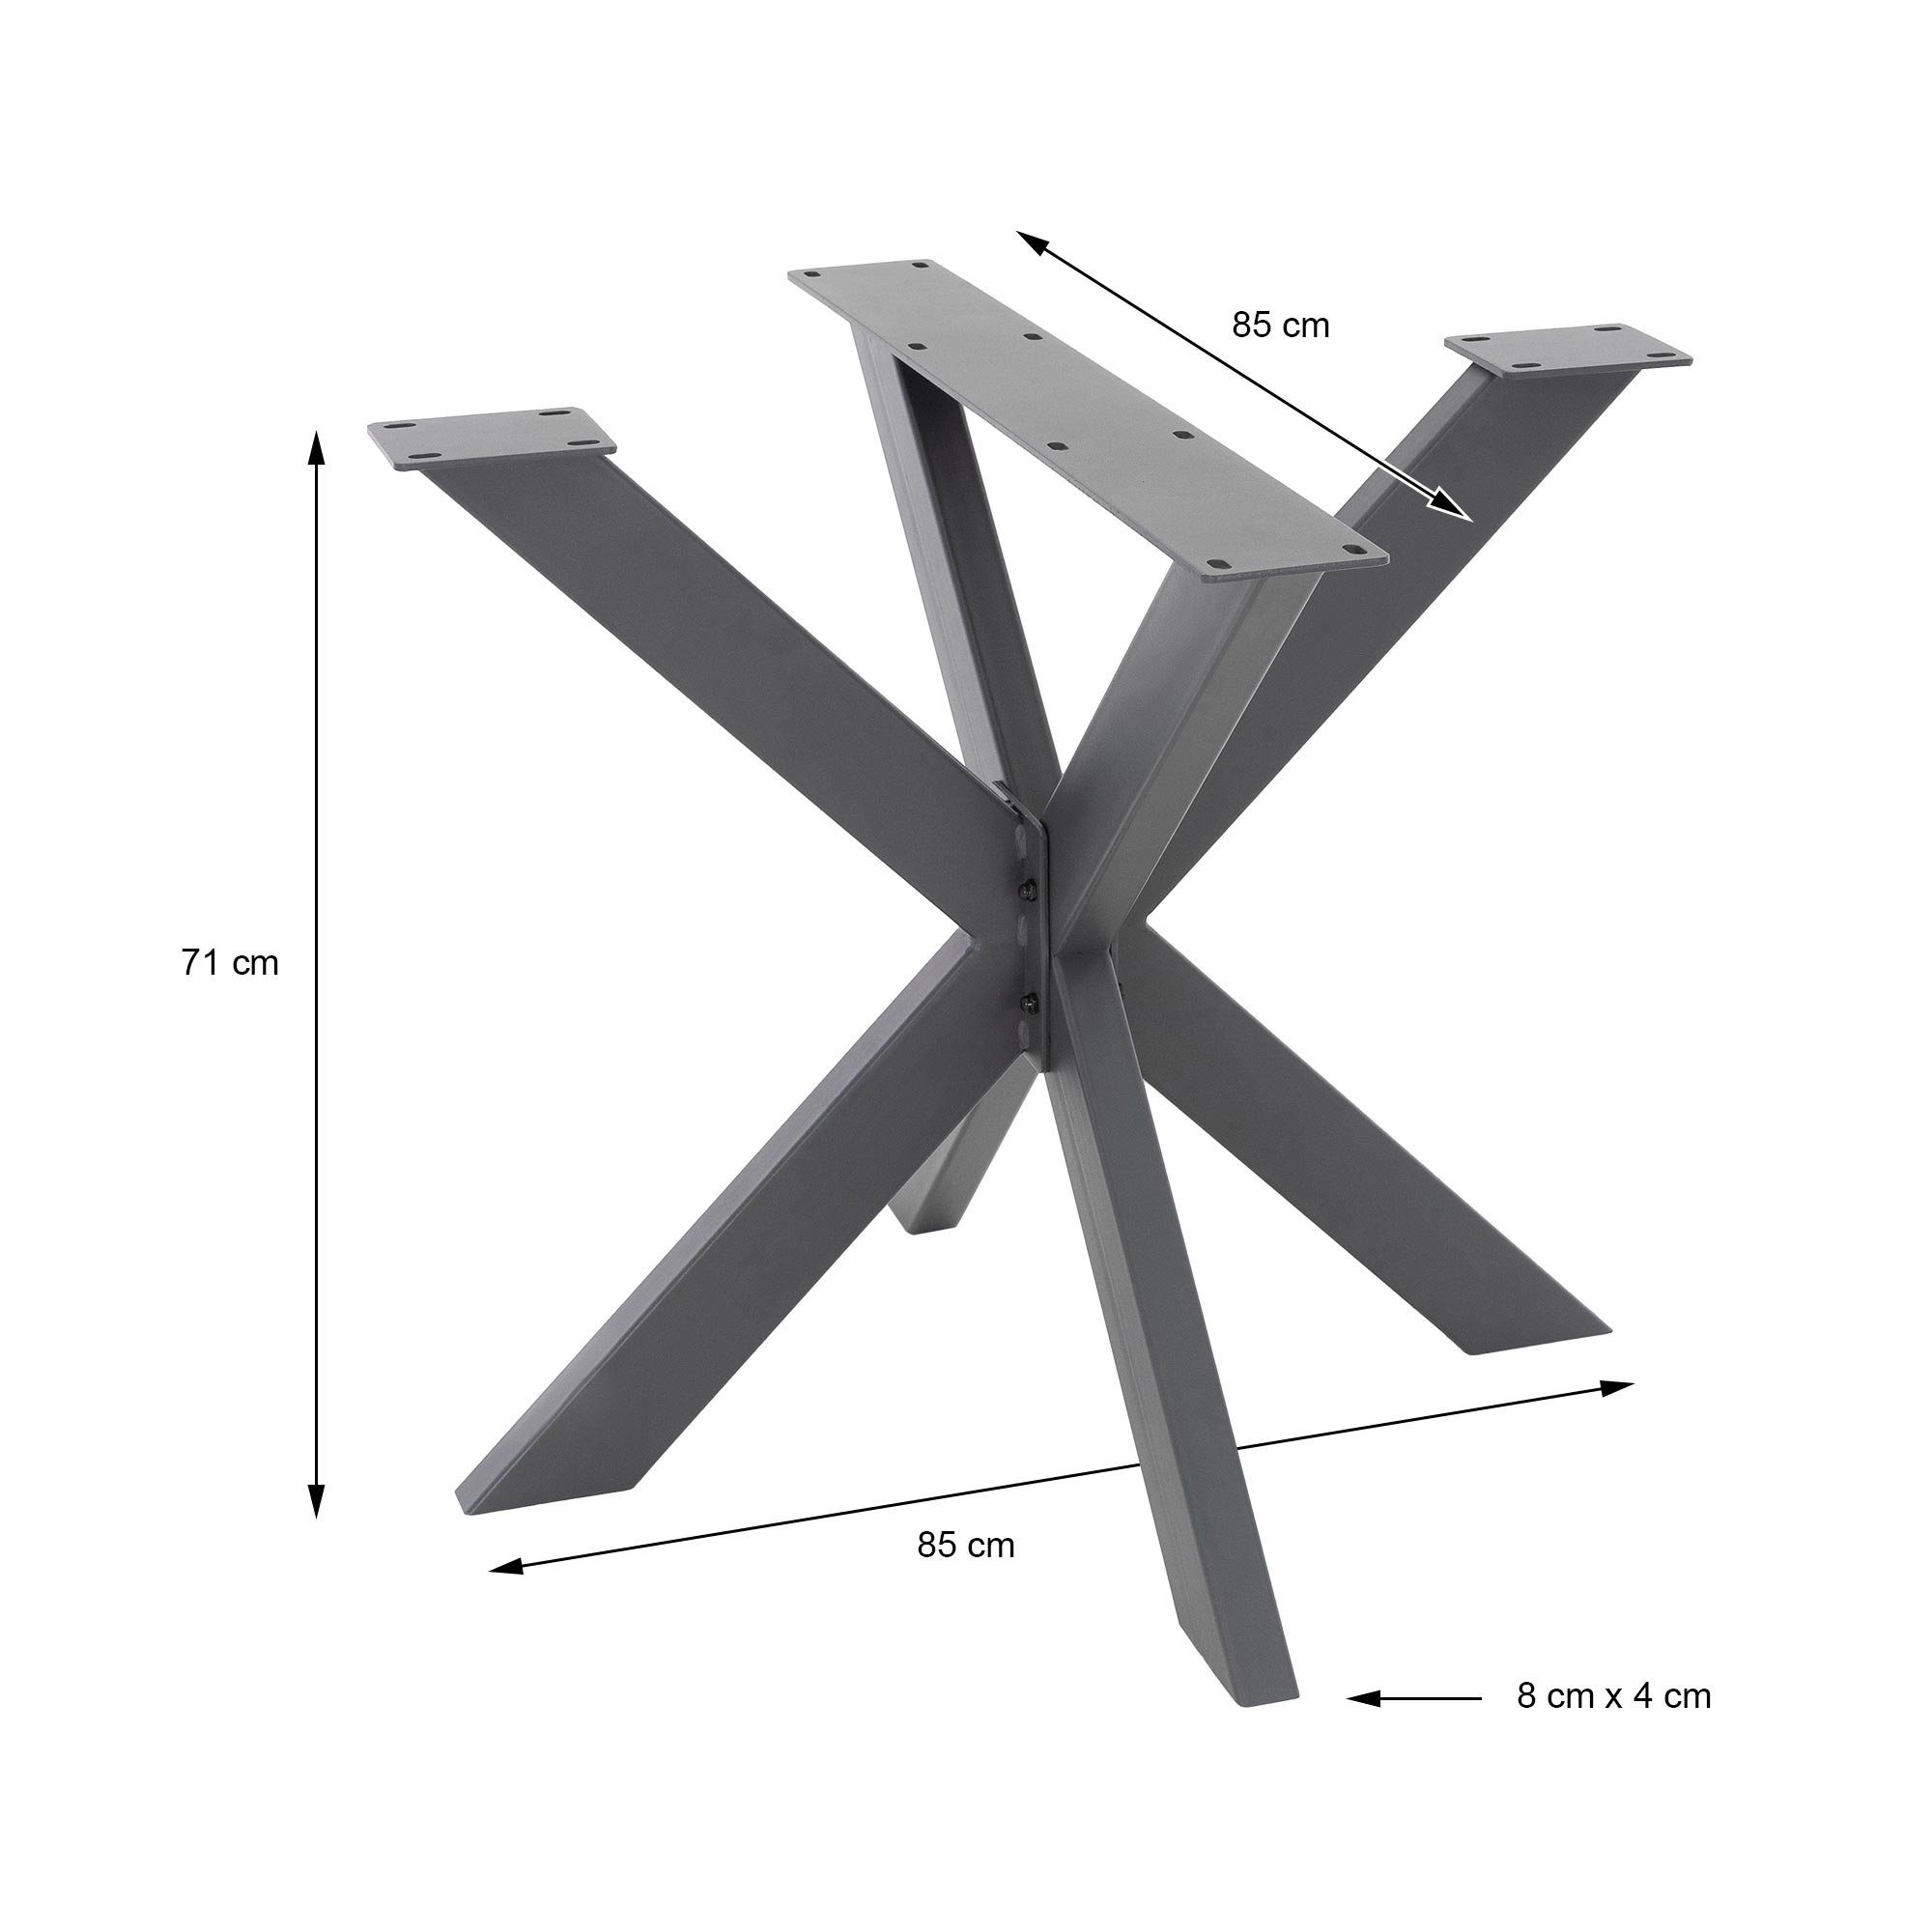 ML-DESIGN Tischbein Tischgestell Spider X-Design DIY Schwerlast Montage Tischkufen, Stahl Kreuzgestell Tischfüße Esstisch einfache Anthrazit 85x71x85cm